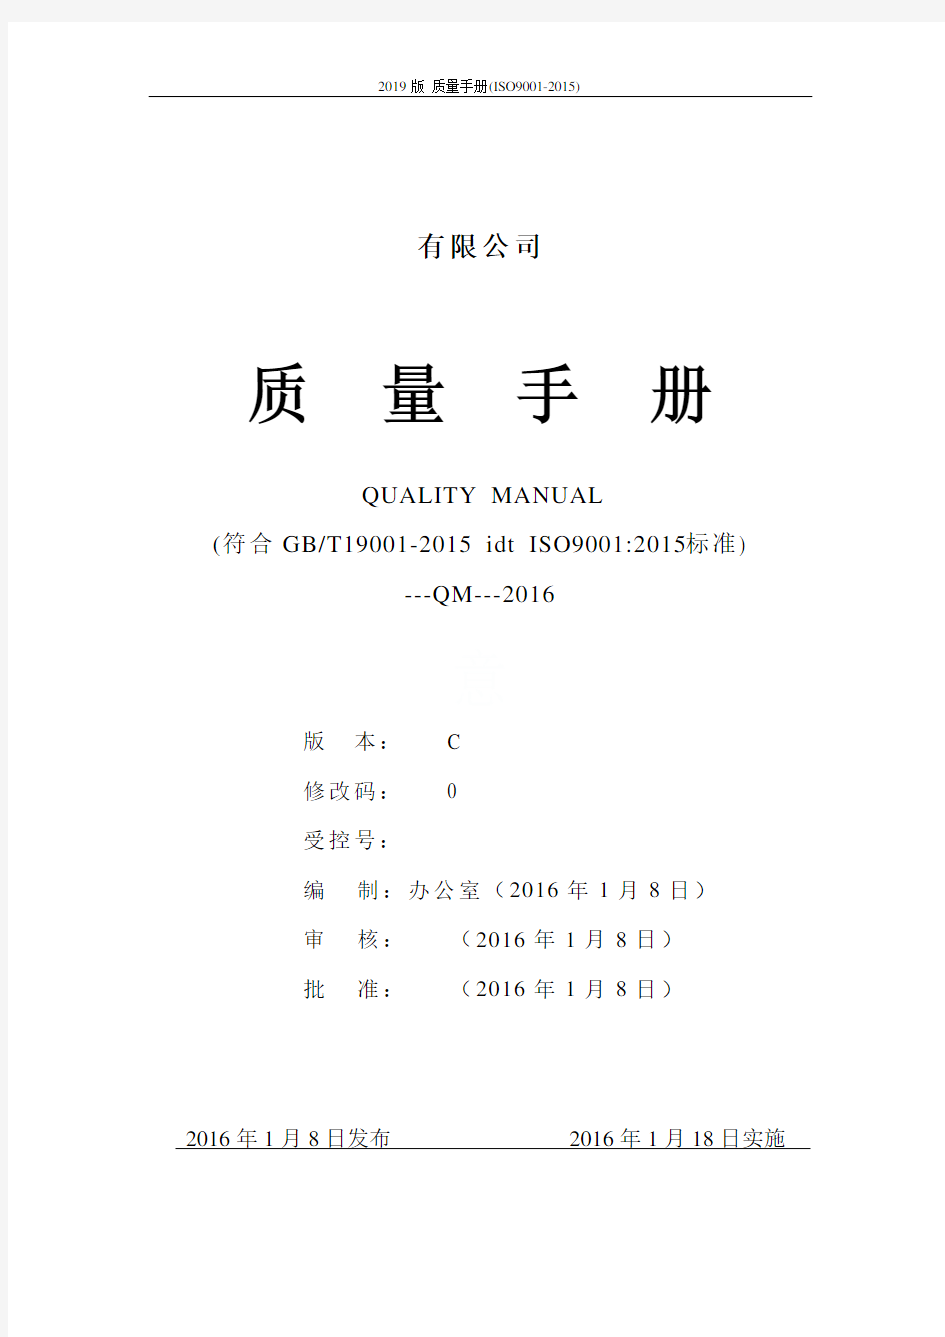 2019版 质量手册(ISO9001-2015)